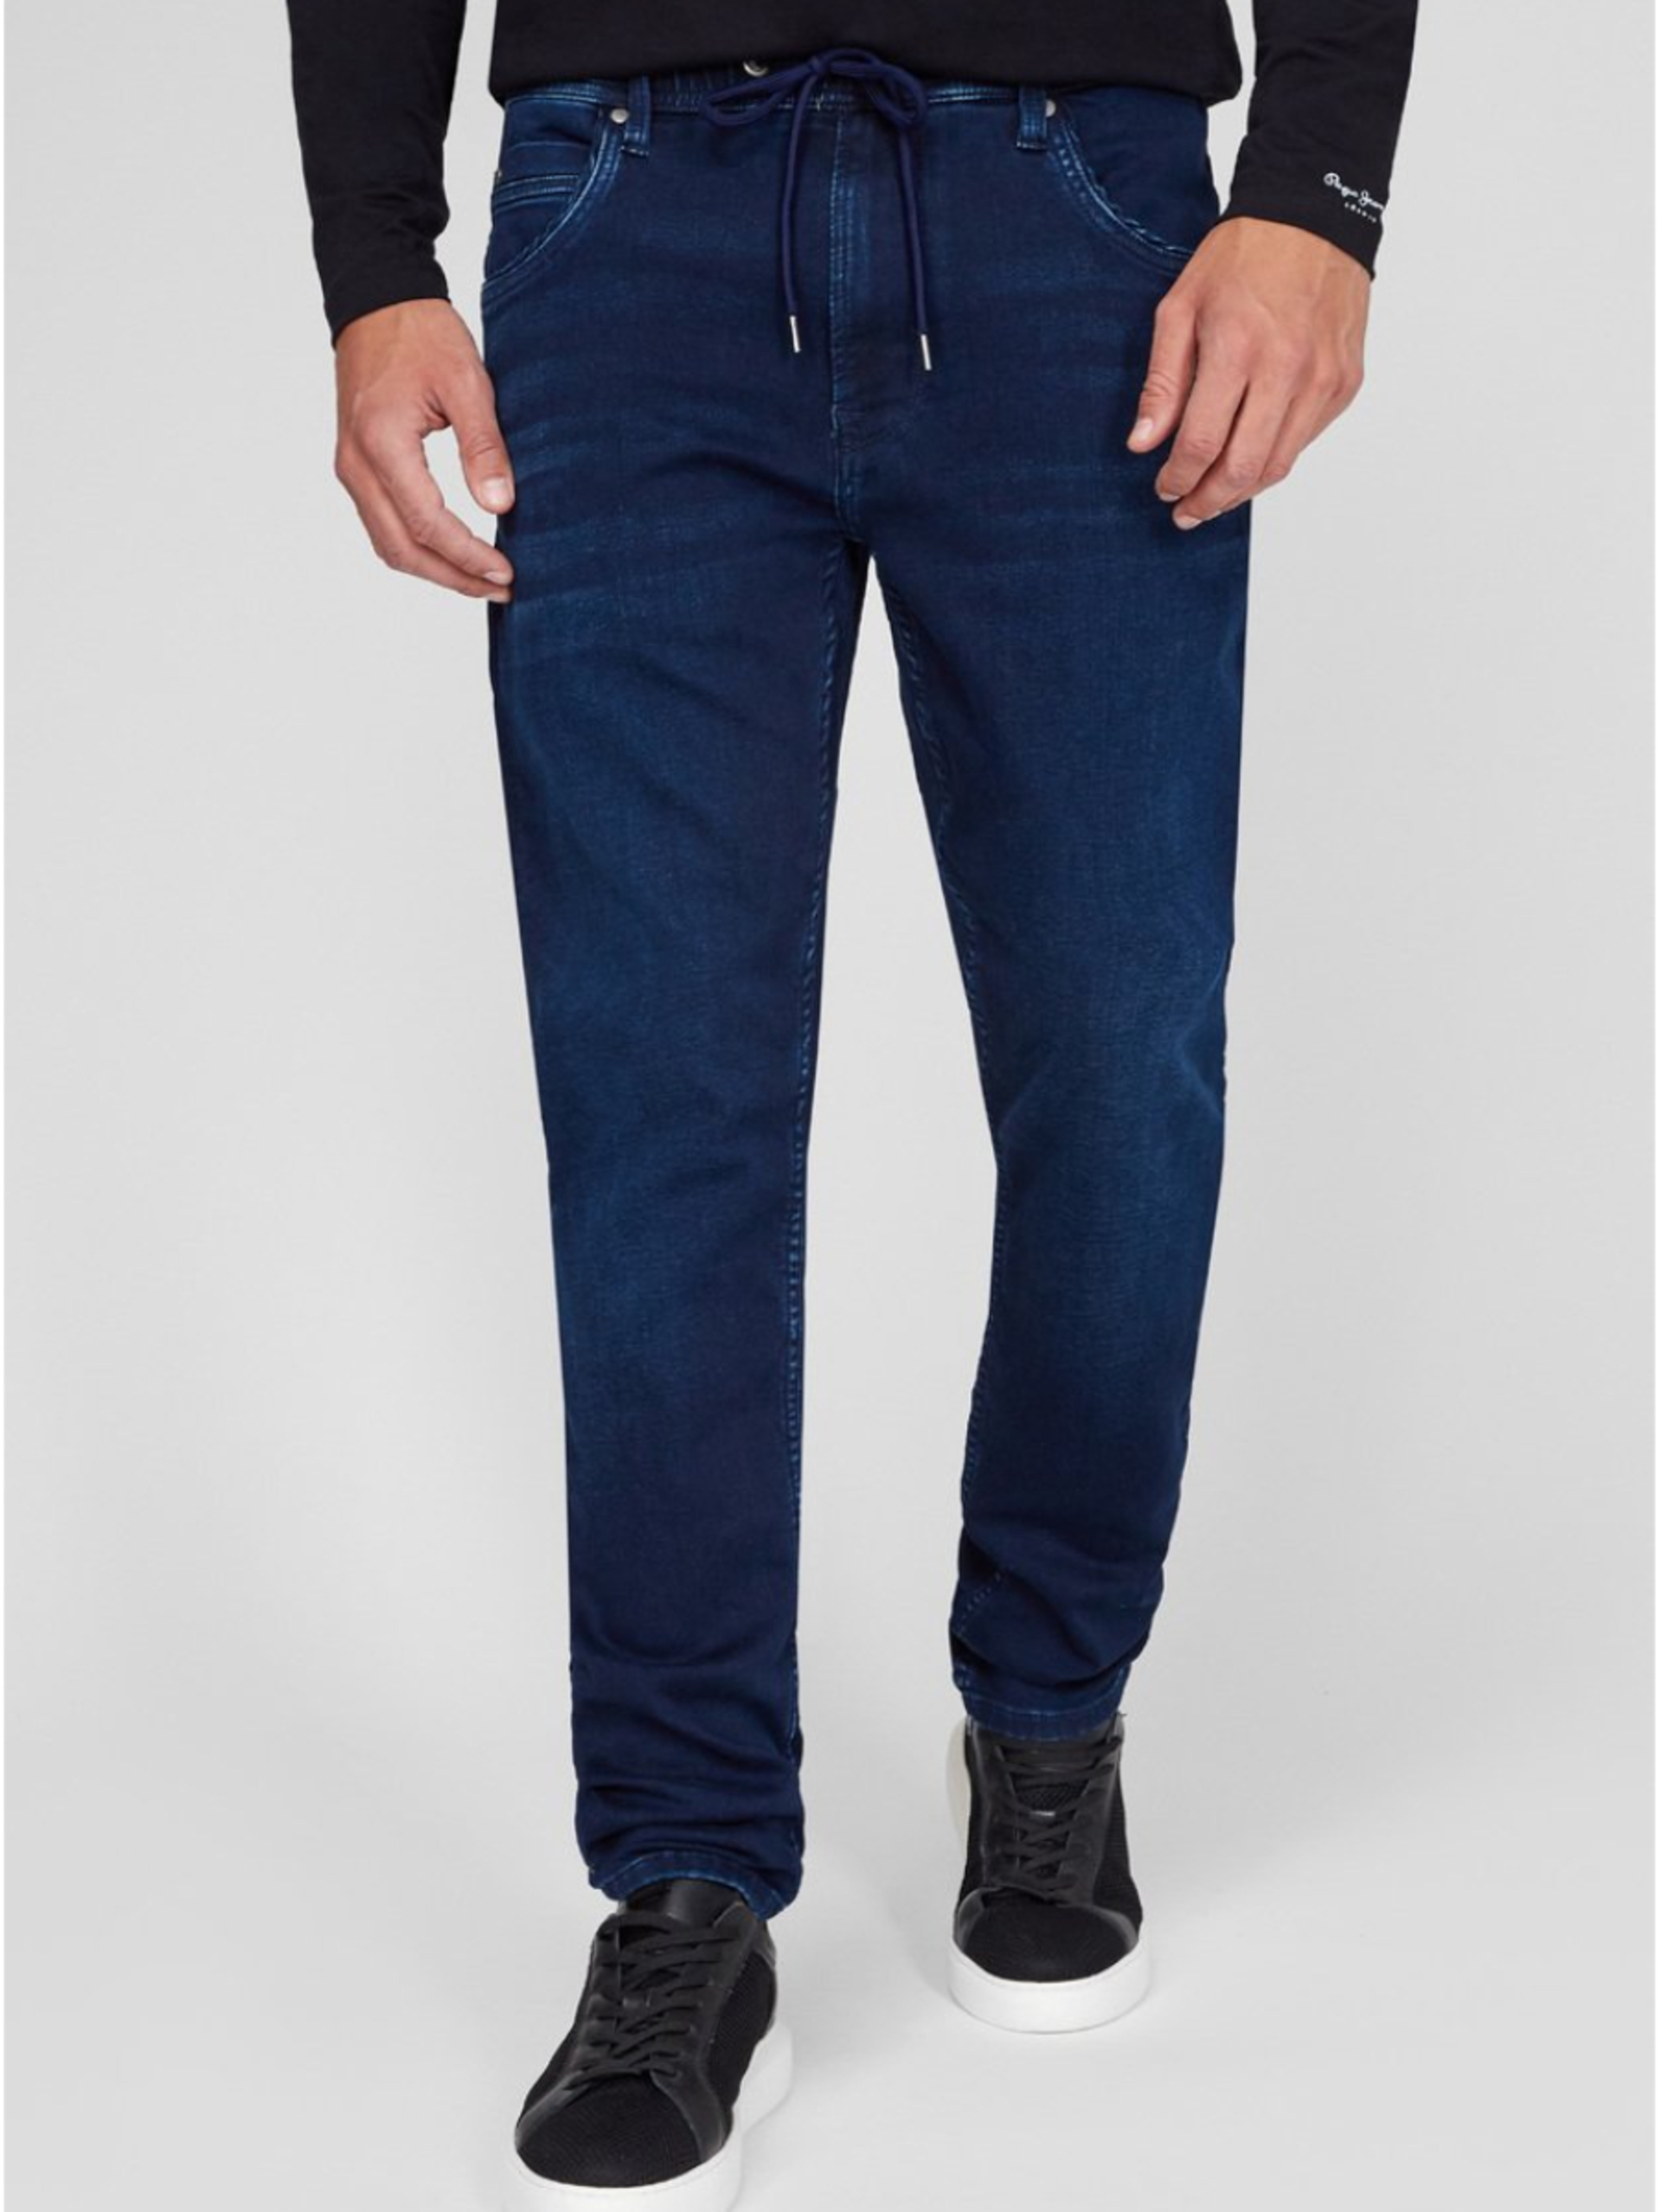 Pepe Jeans pánské modré džíny - 33 (000)